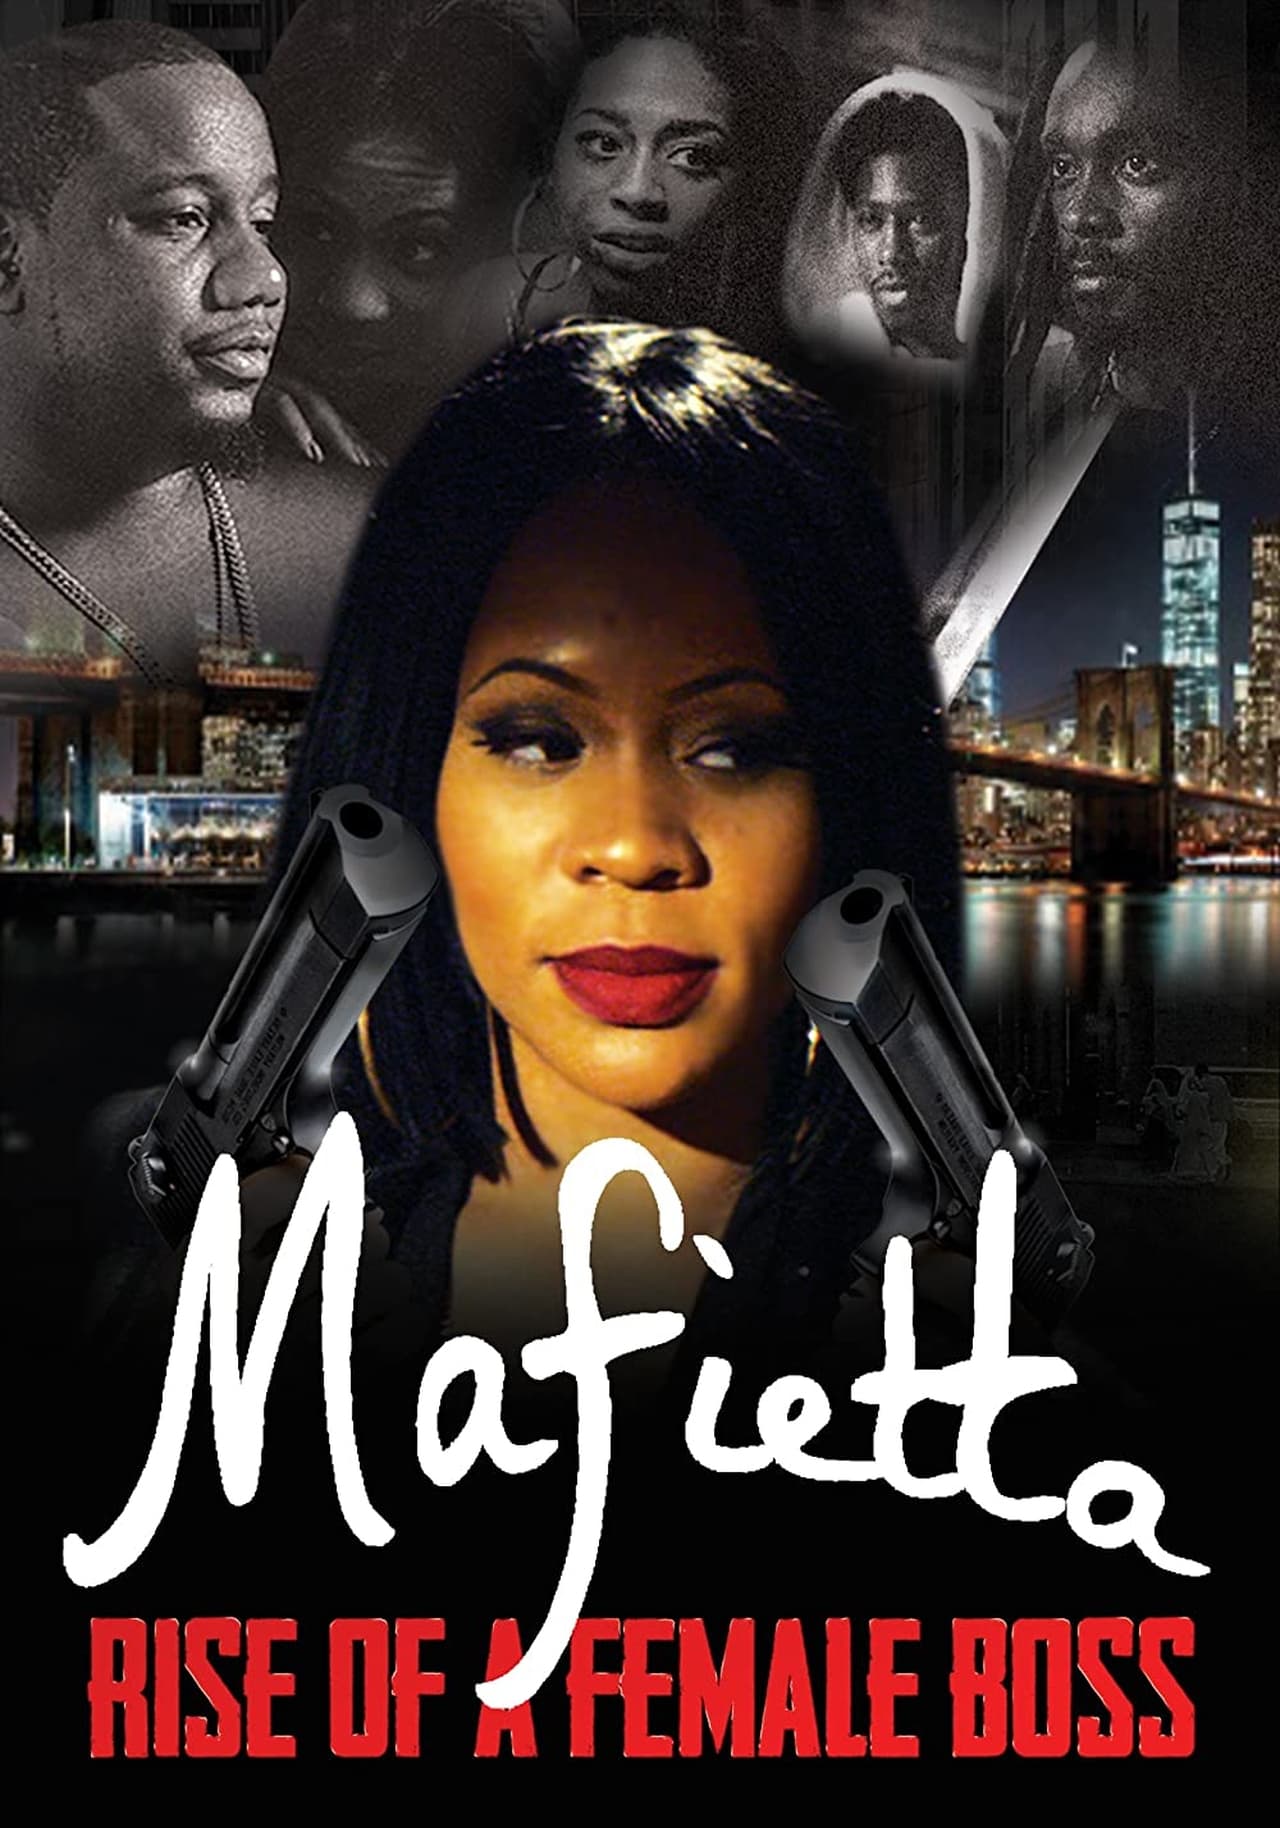 Mafietta: The Introduction